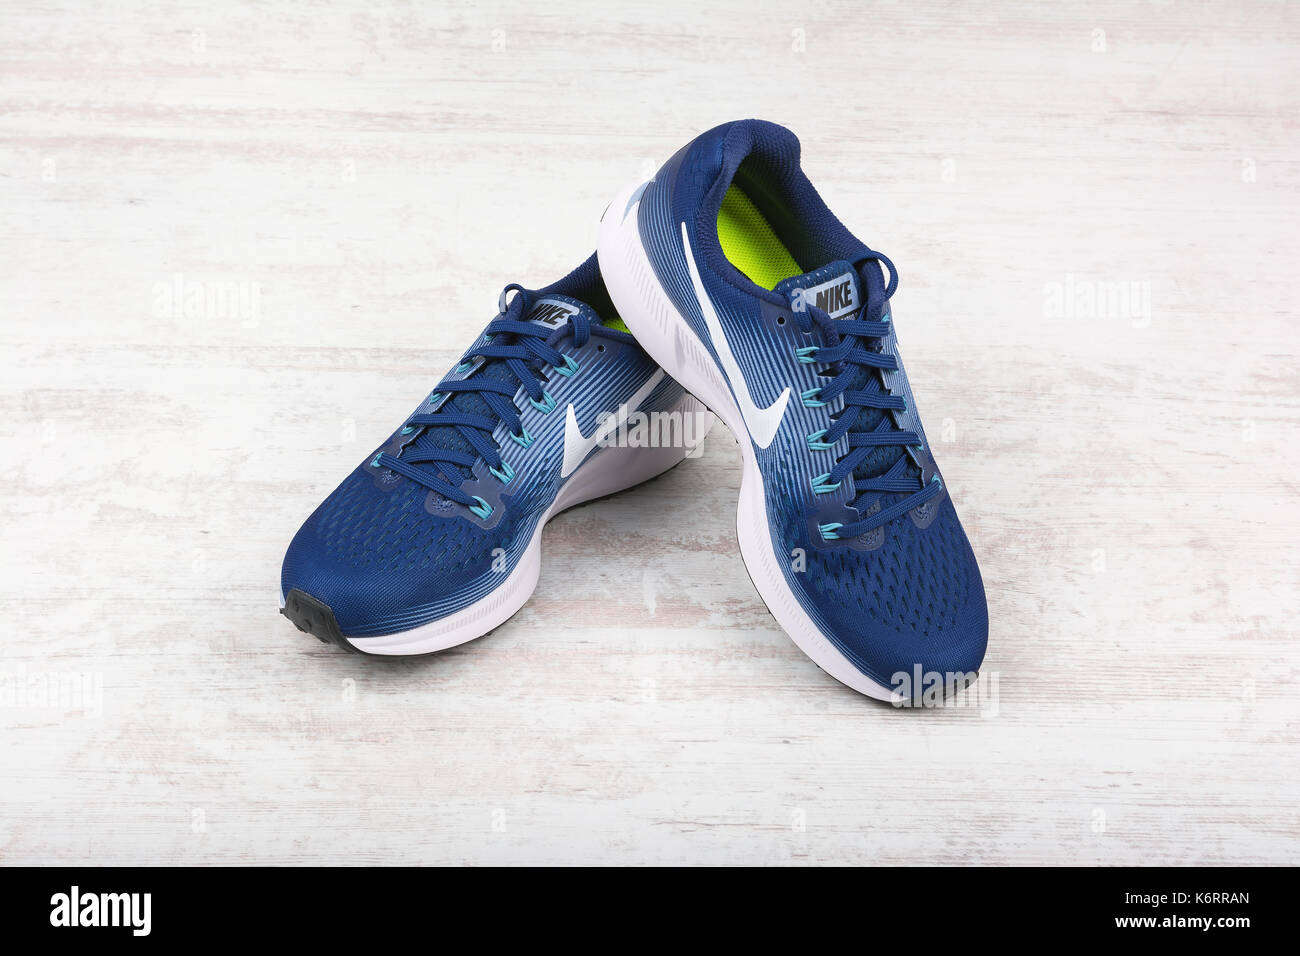 BURGAS, Bulgarien - September 6, 2017: Nike Air Zoom Pegasus 34 Damen  Laufschuhe in Blau auf schwarzem Hintergrund. Nike ist eine globale Sport  Kleidung und Stockfotografie - Alamy